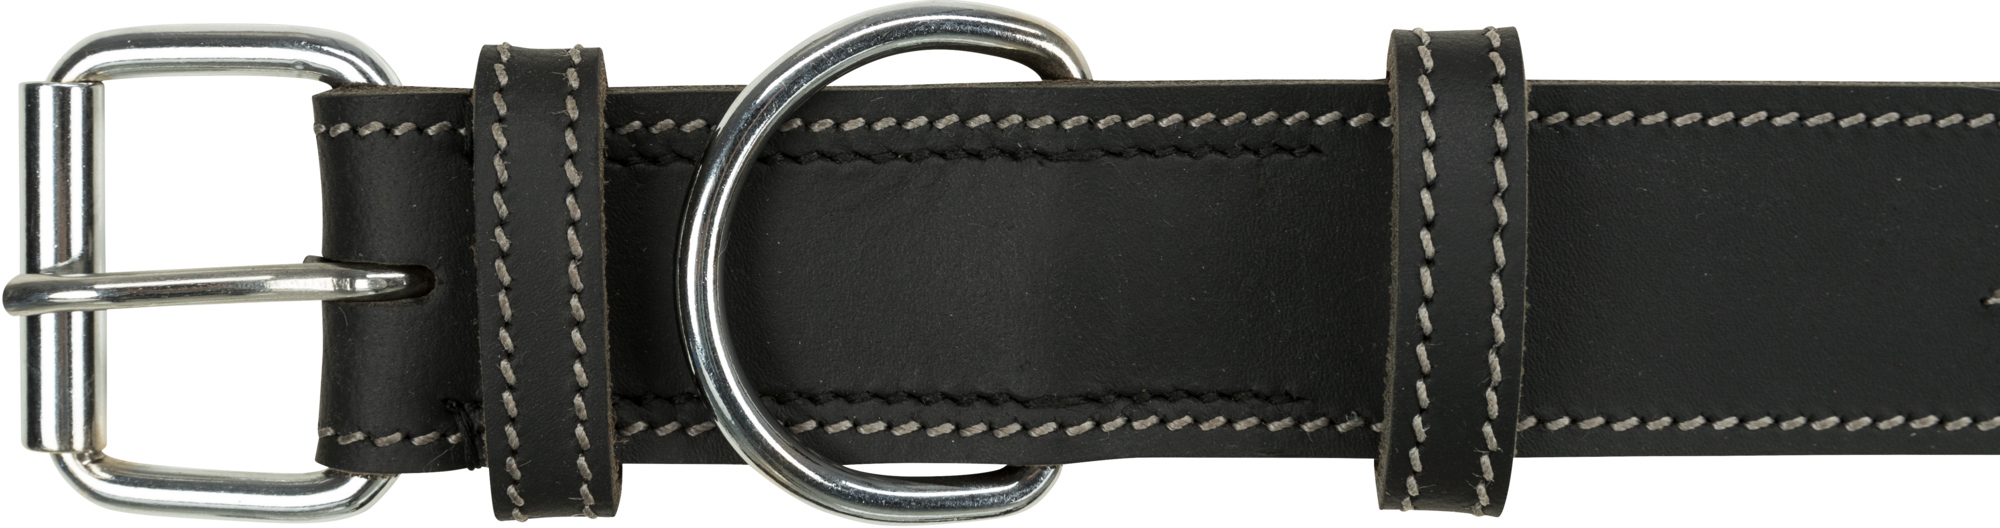 Coleira de couro encerado e envelhecido preto Rustic Heartbeat - 3 tamanhos disponíveis